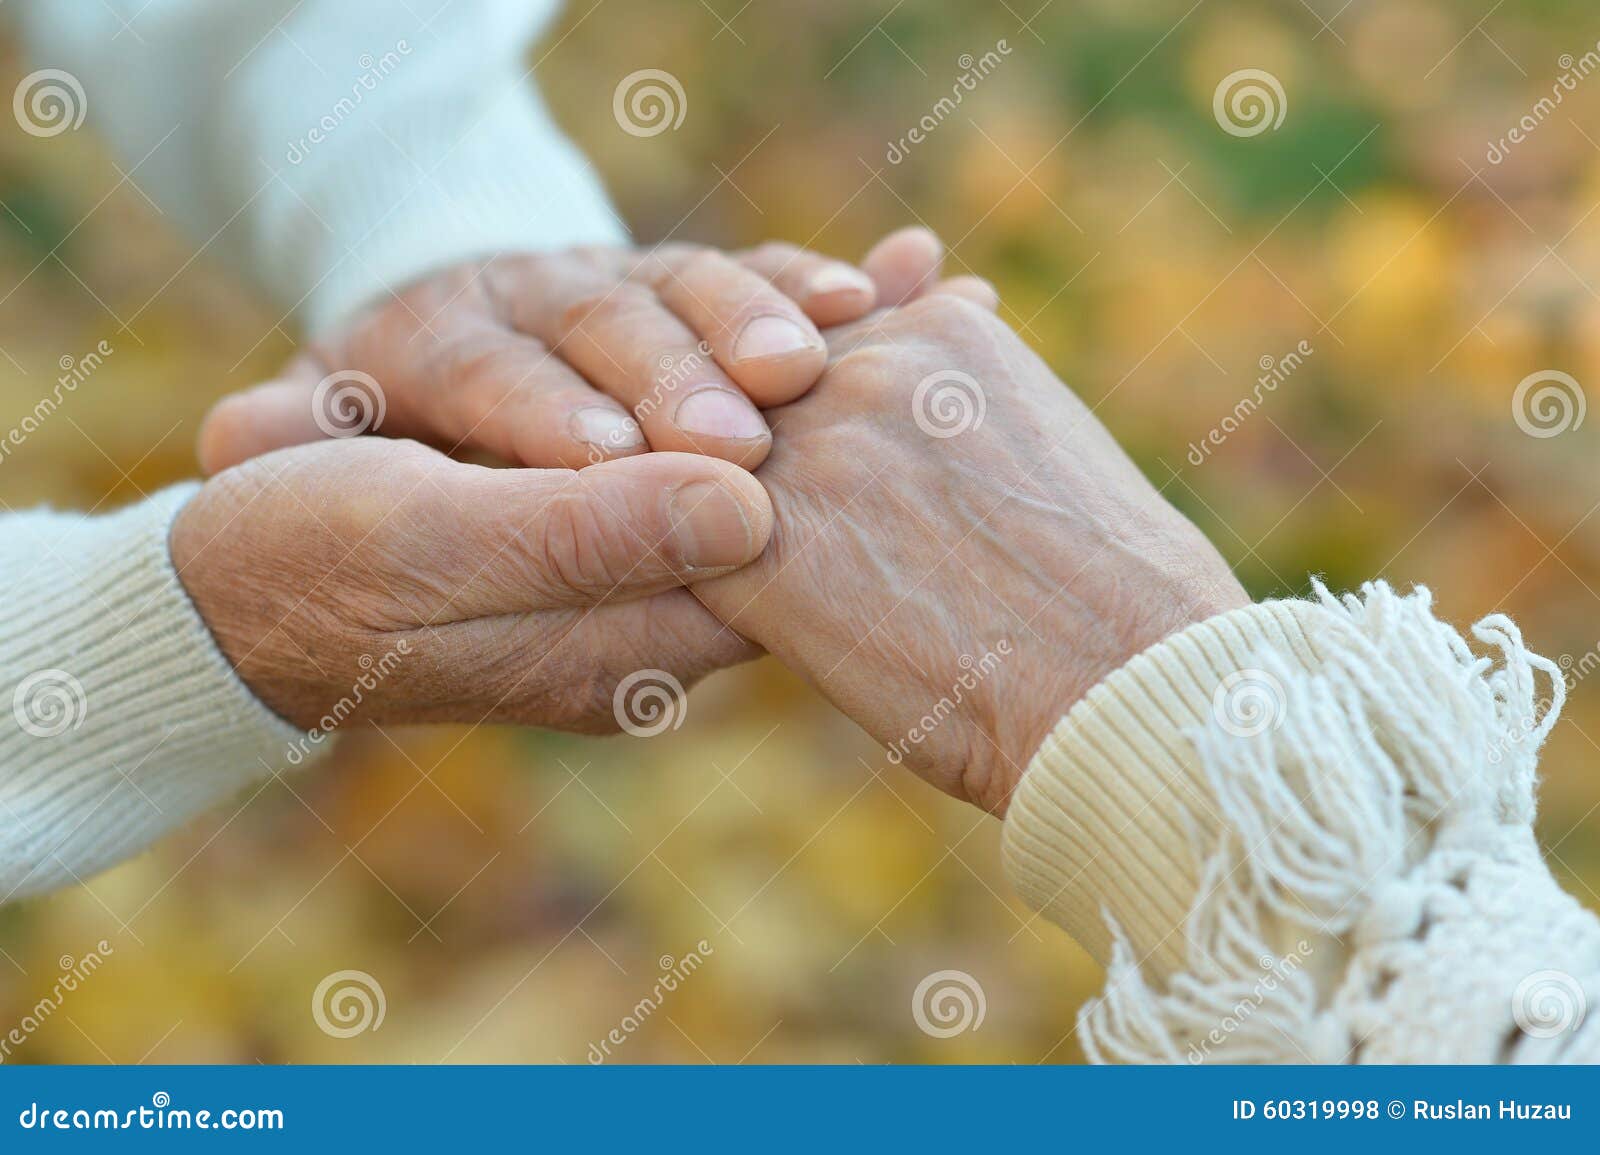 Пожилые держатся за руки. Старики держатся за руки. Пожилая пара держится за руки. Руки пожилой пары.